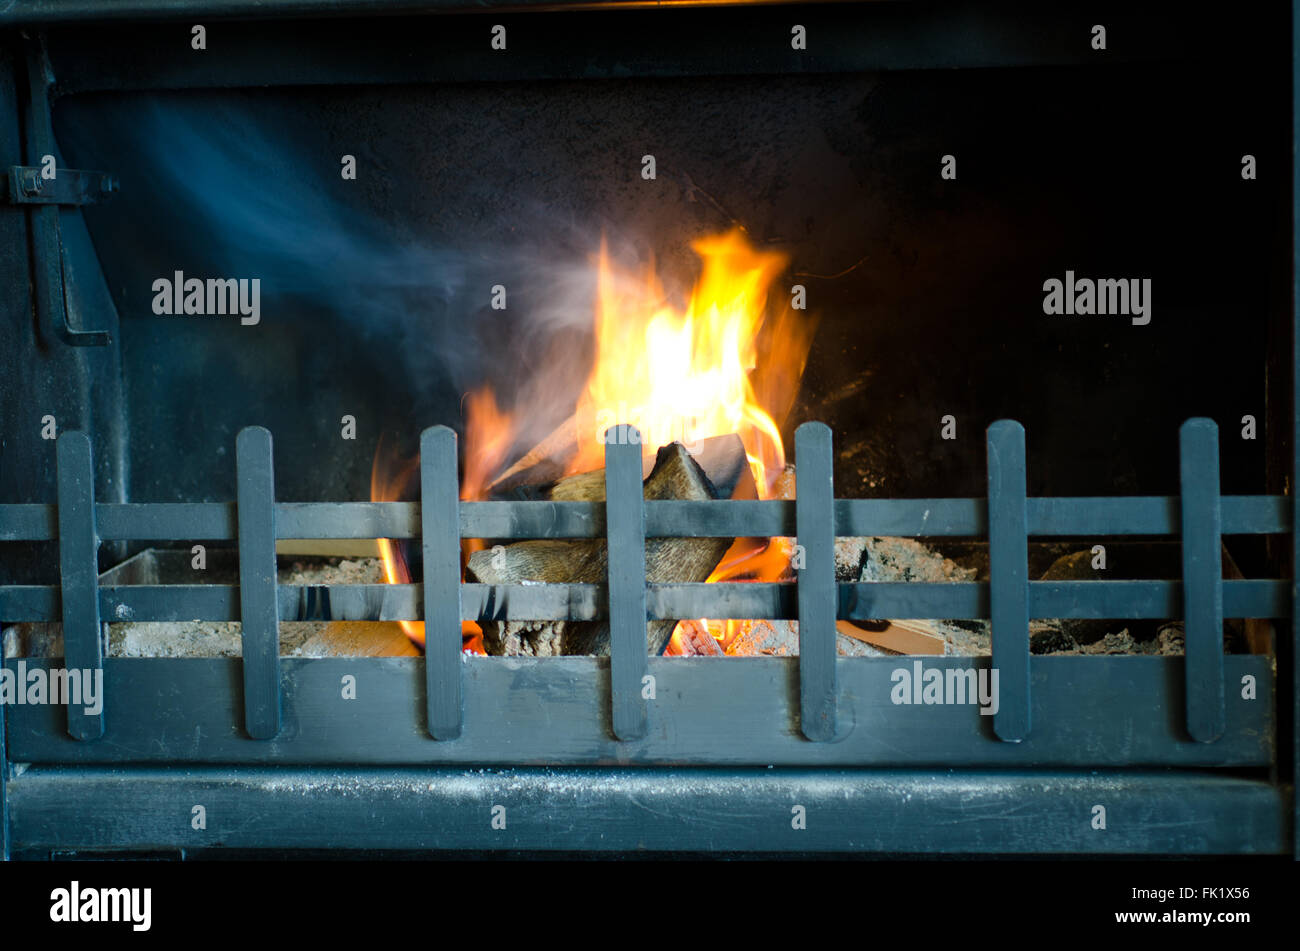 Composé d'une cheminée feu de bois brûlant dans une grille métallique Banque D'Images